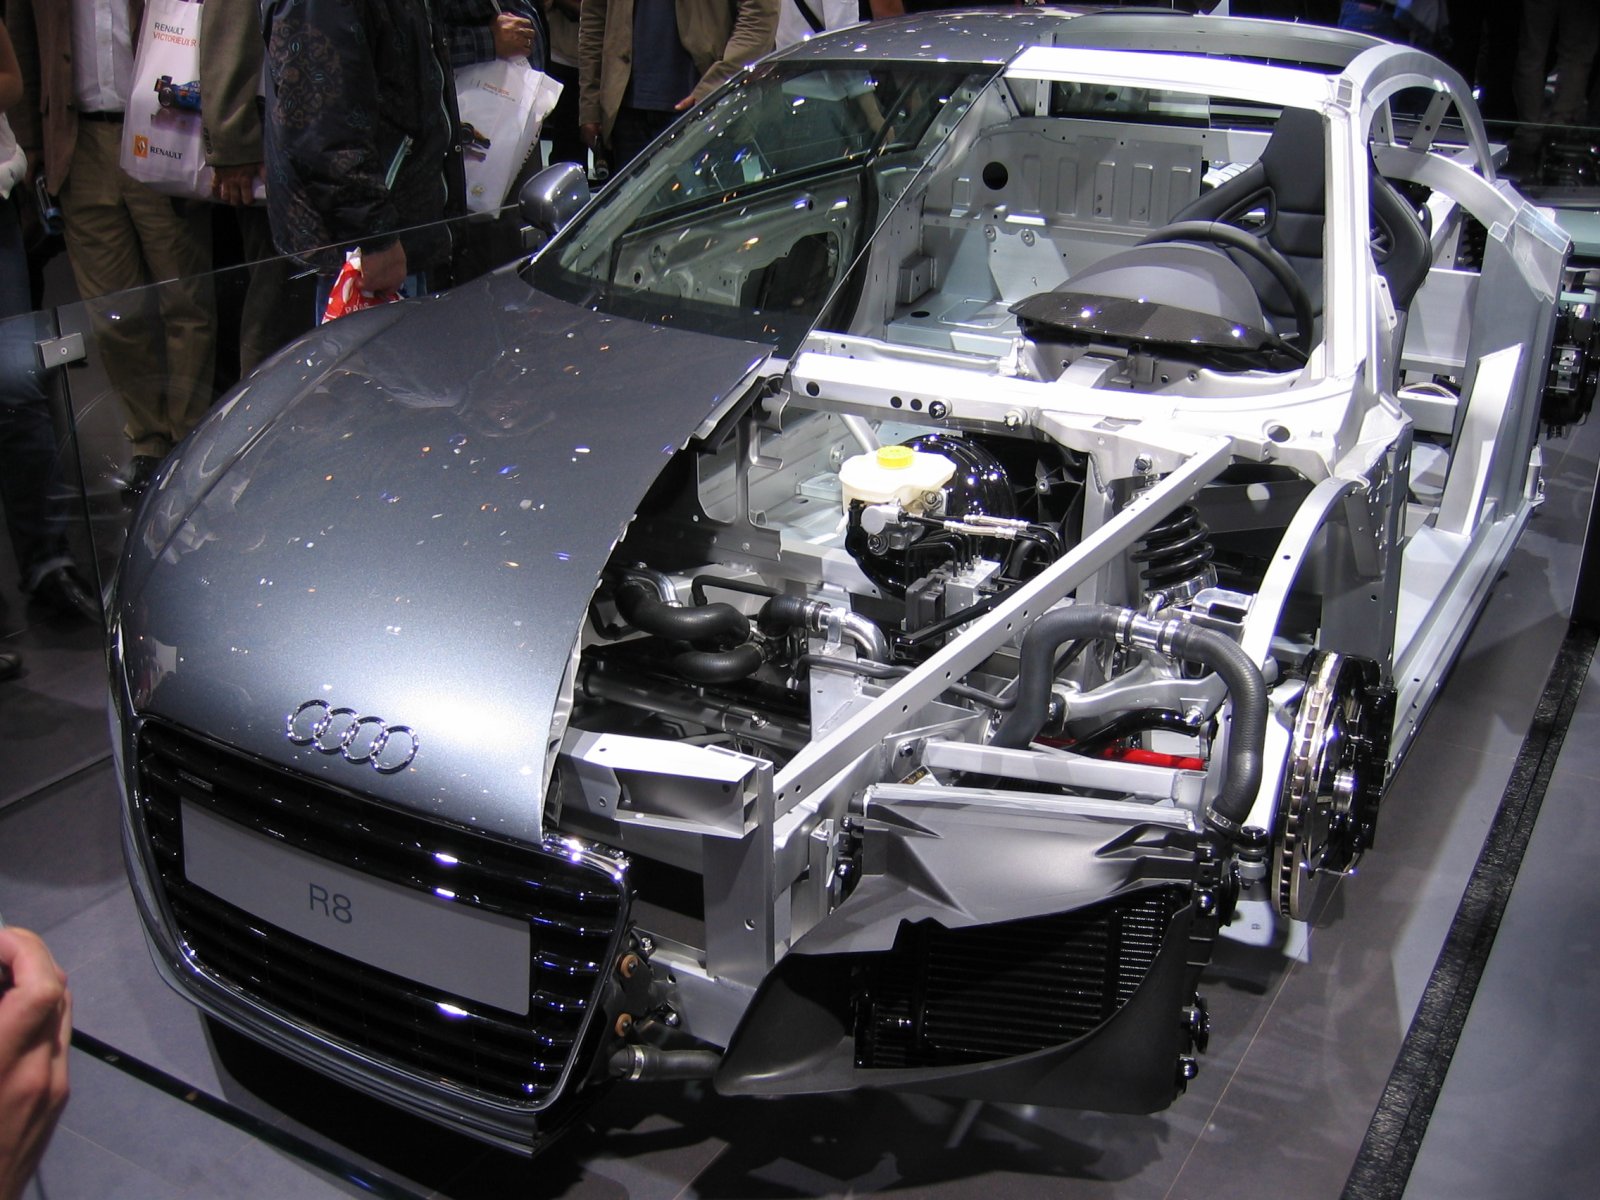 Audi_R8_cutaway_(2305471884).jpg